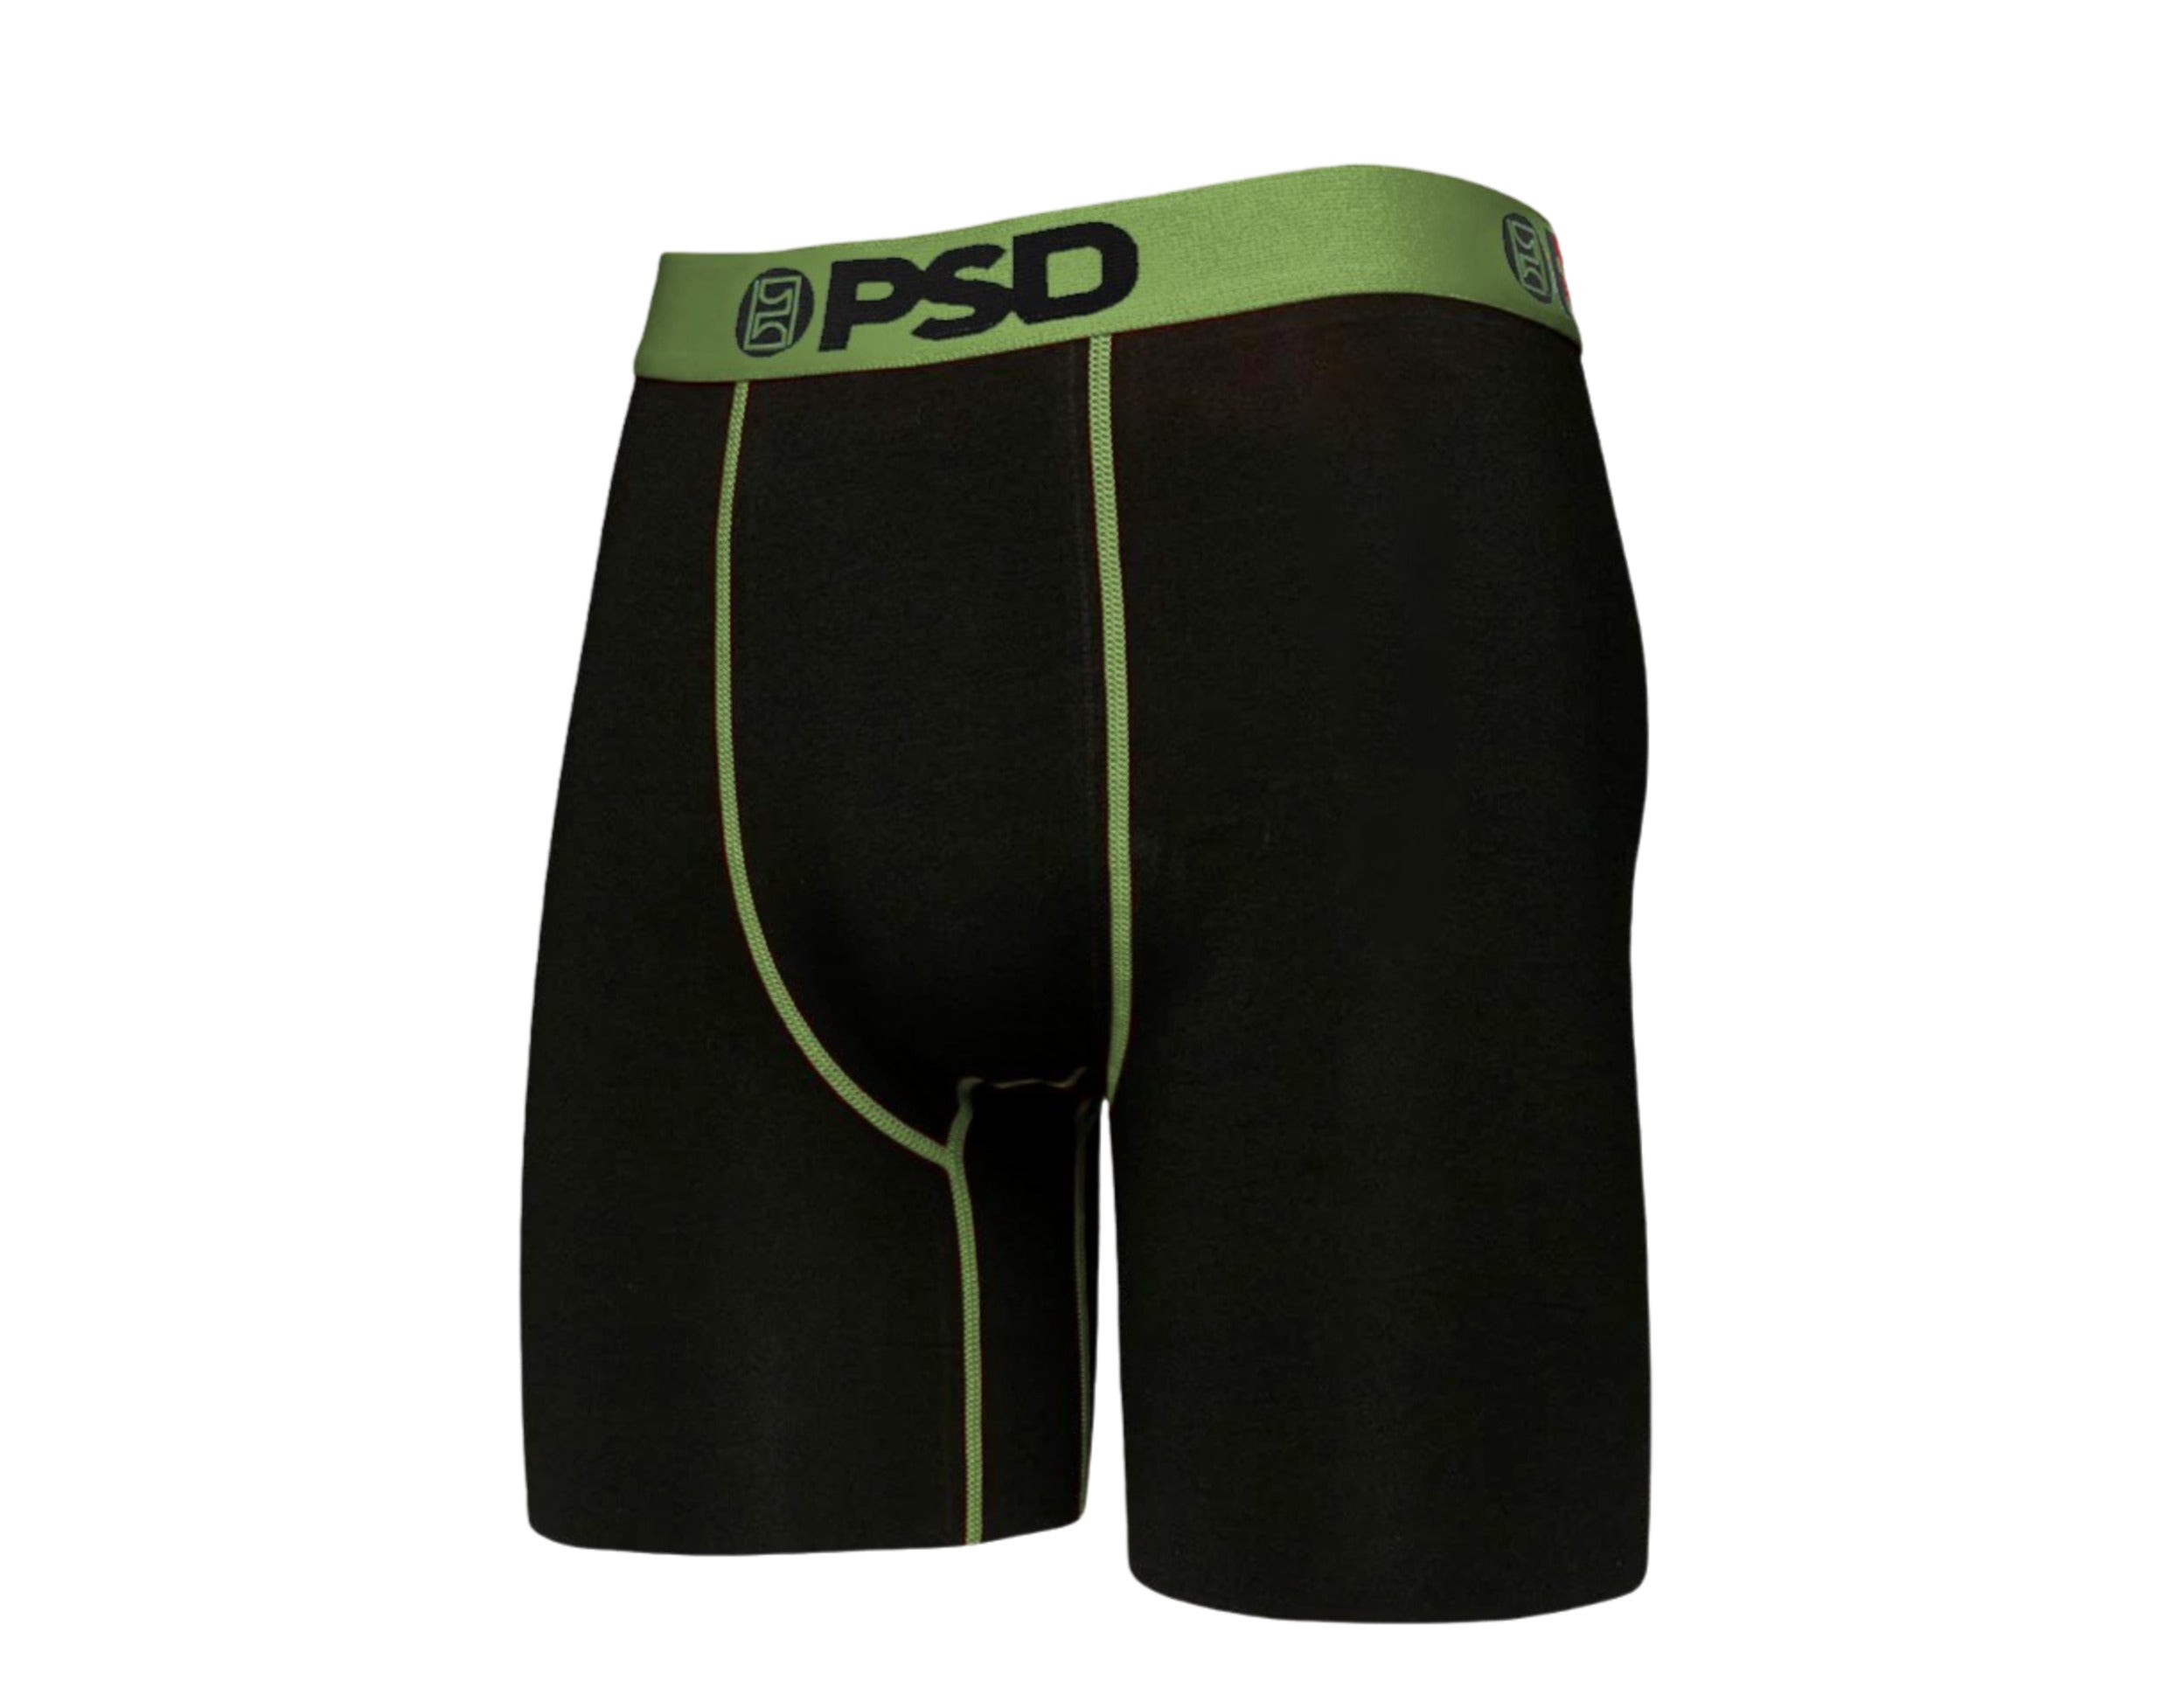 PSD 7 Cotton 3-Pack Boxer Briefs Men's Underwear